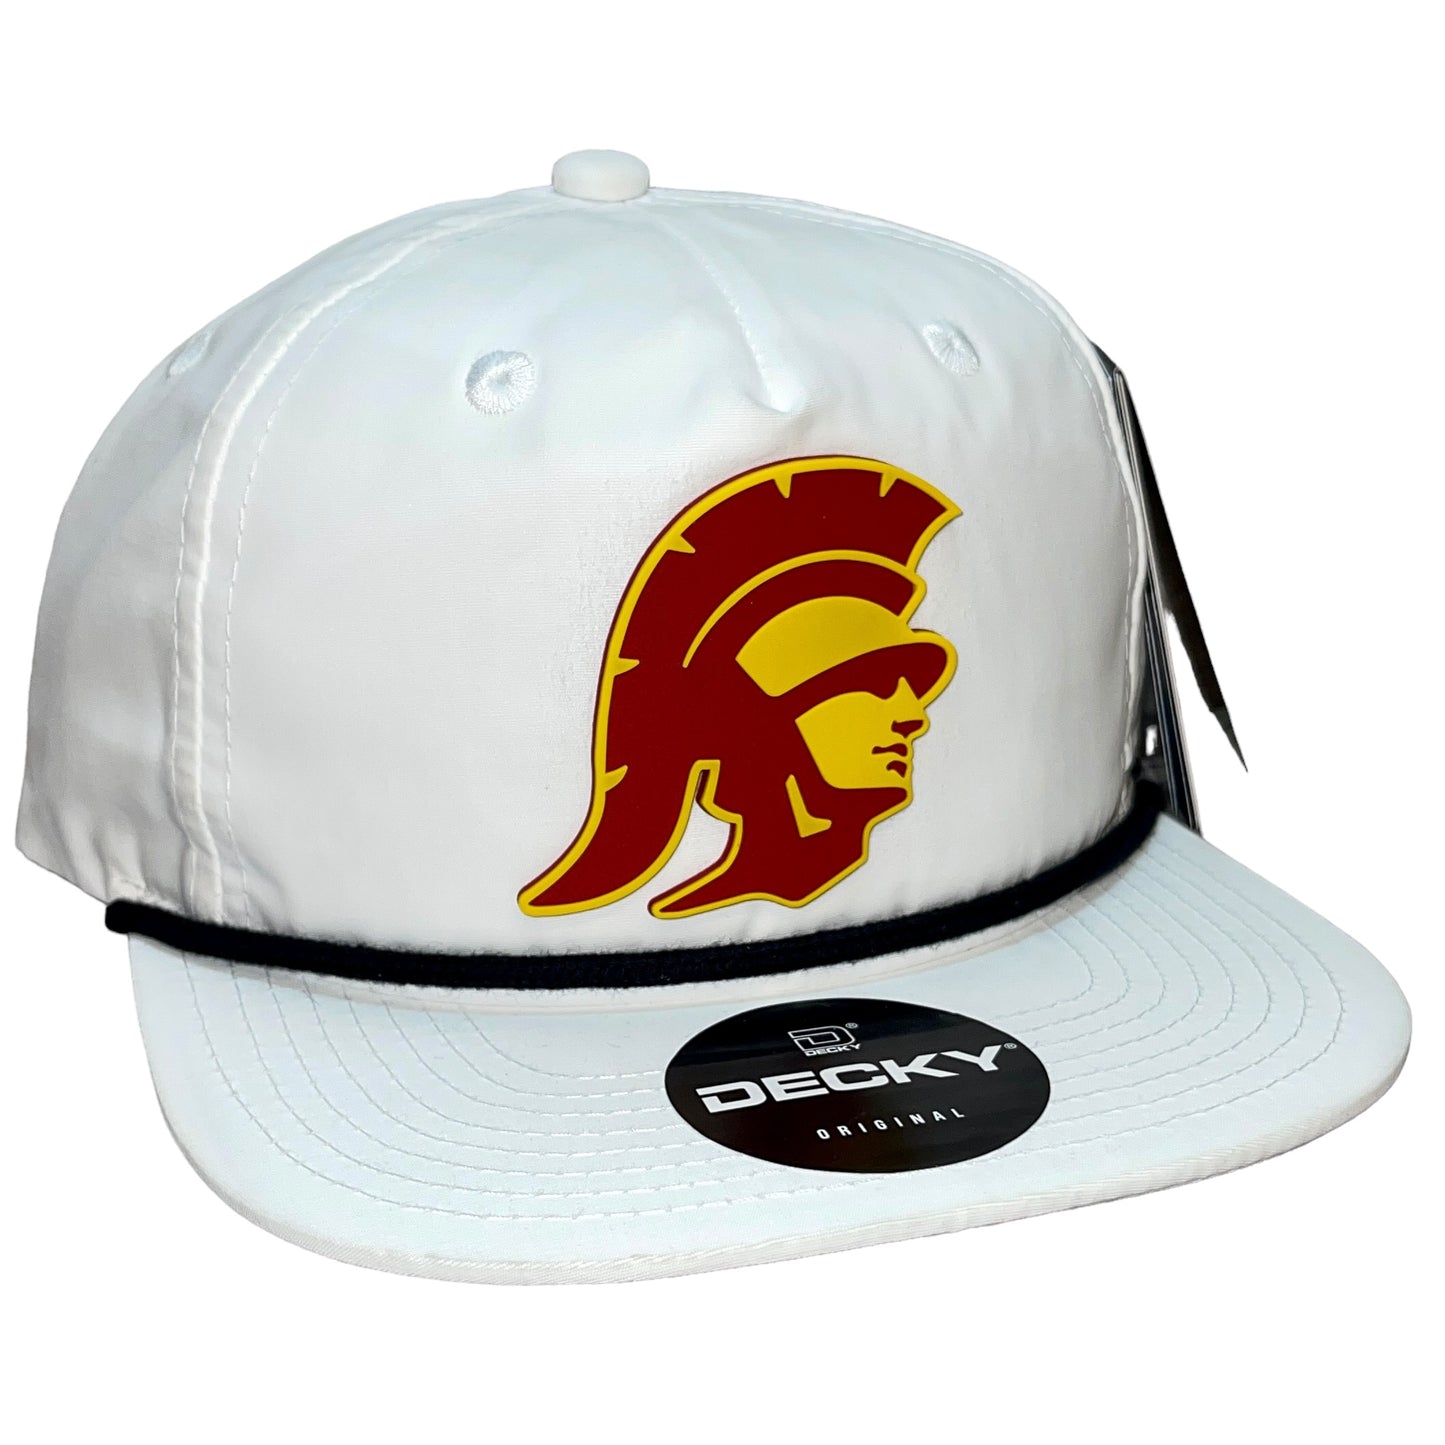 USC Trojans 3D Classic Rope Hat- White/ Black - Ten Gallon Hat Co.